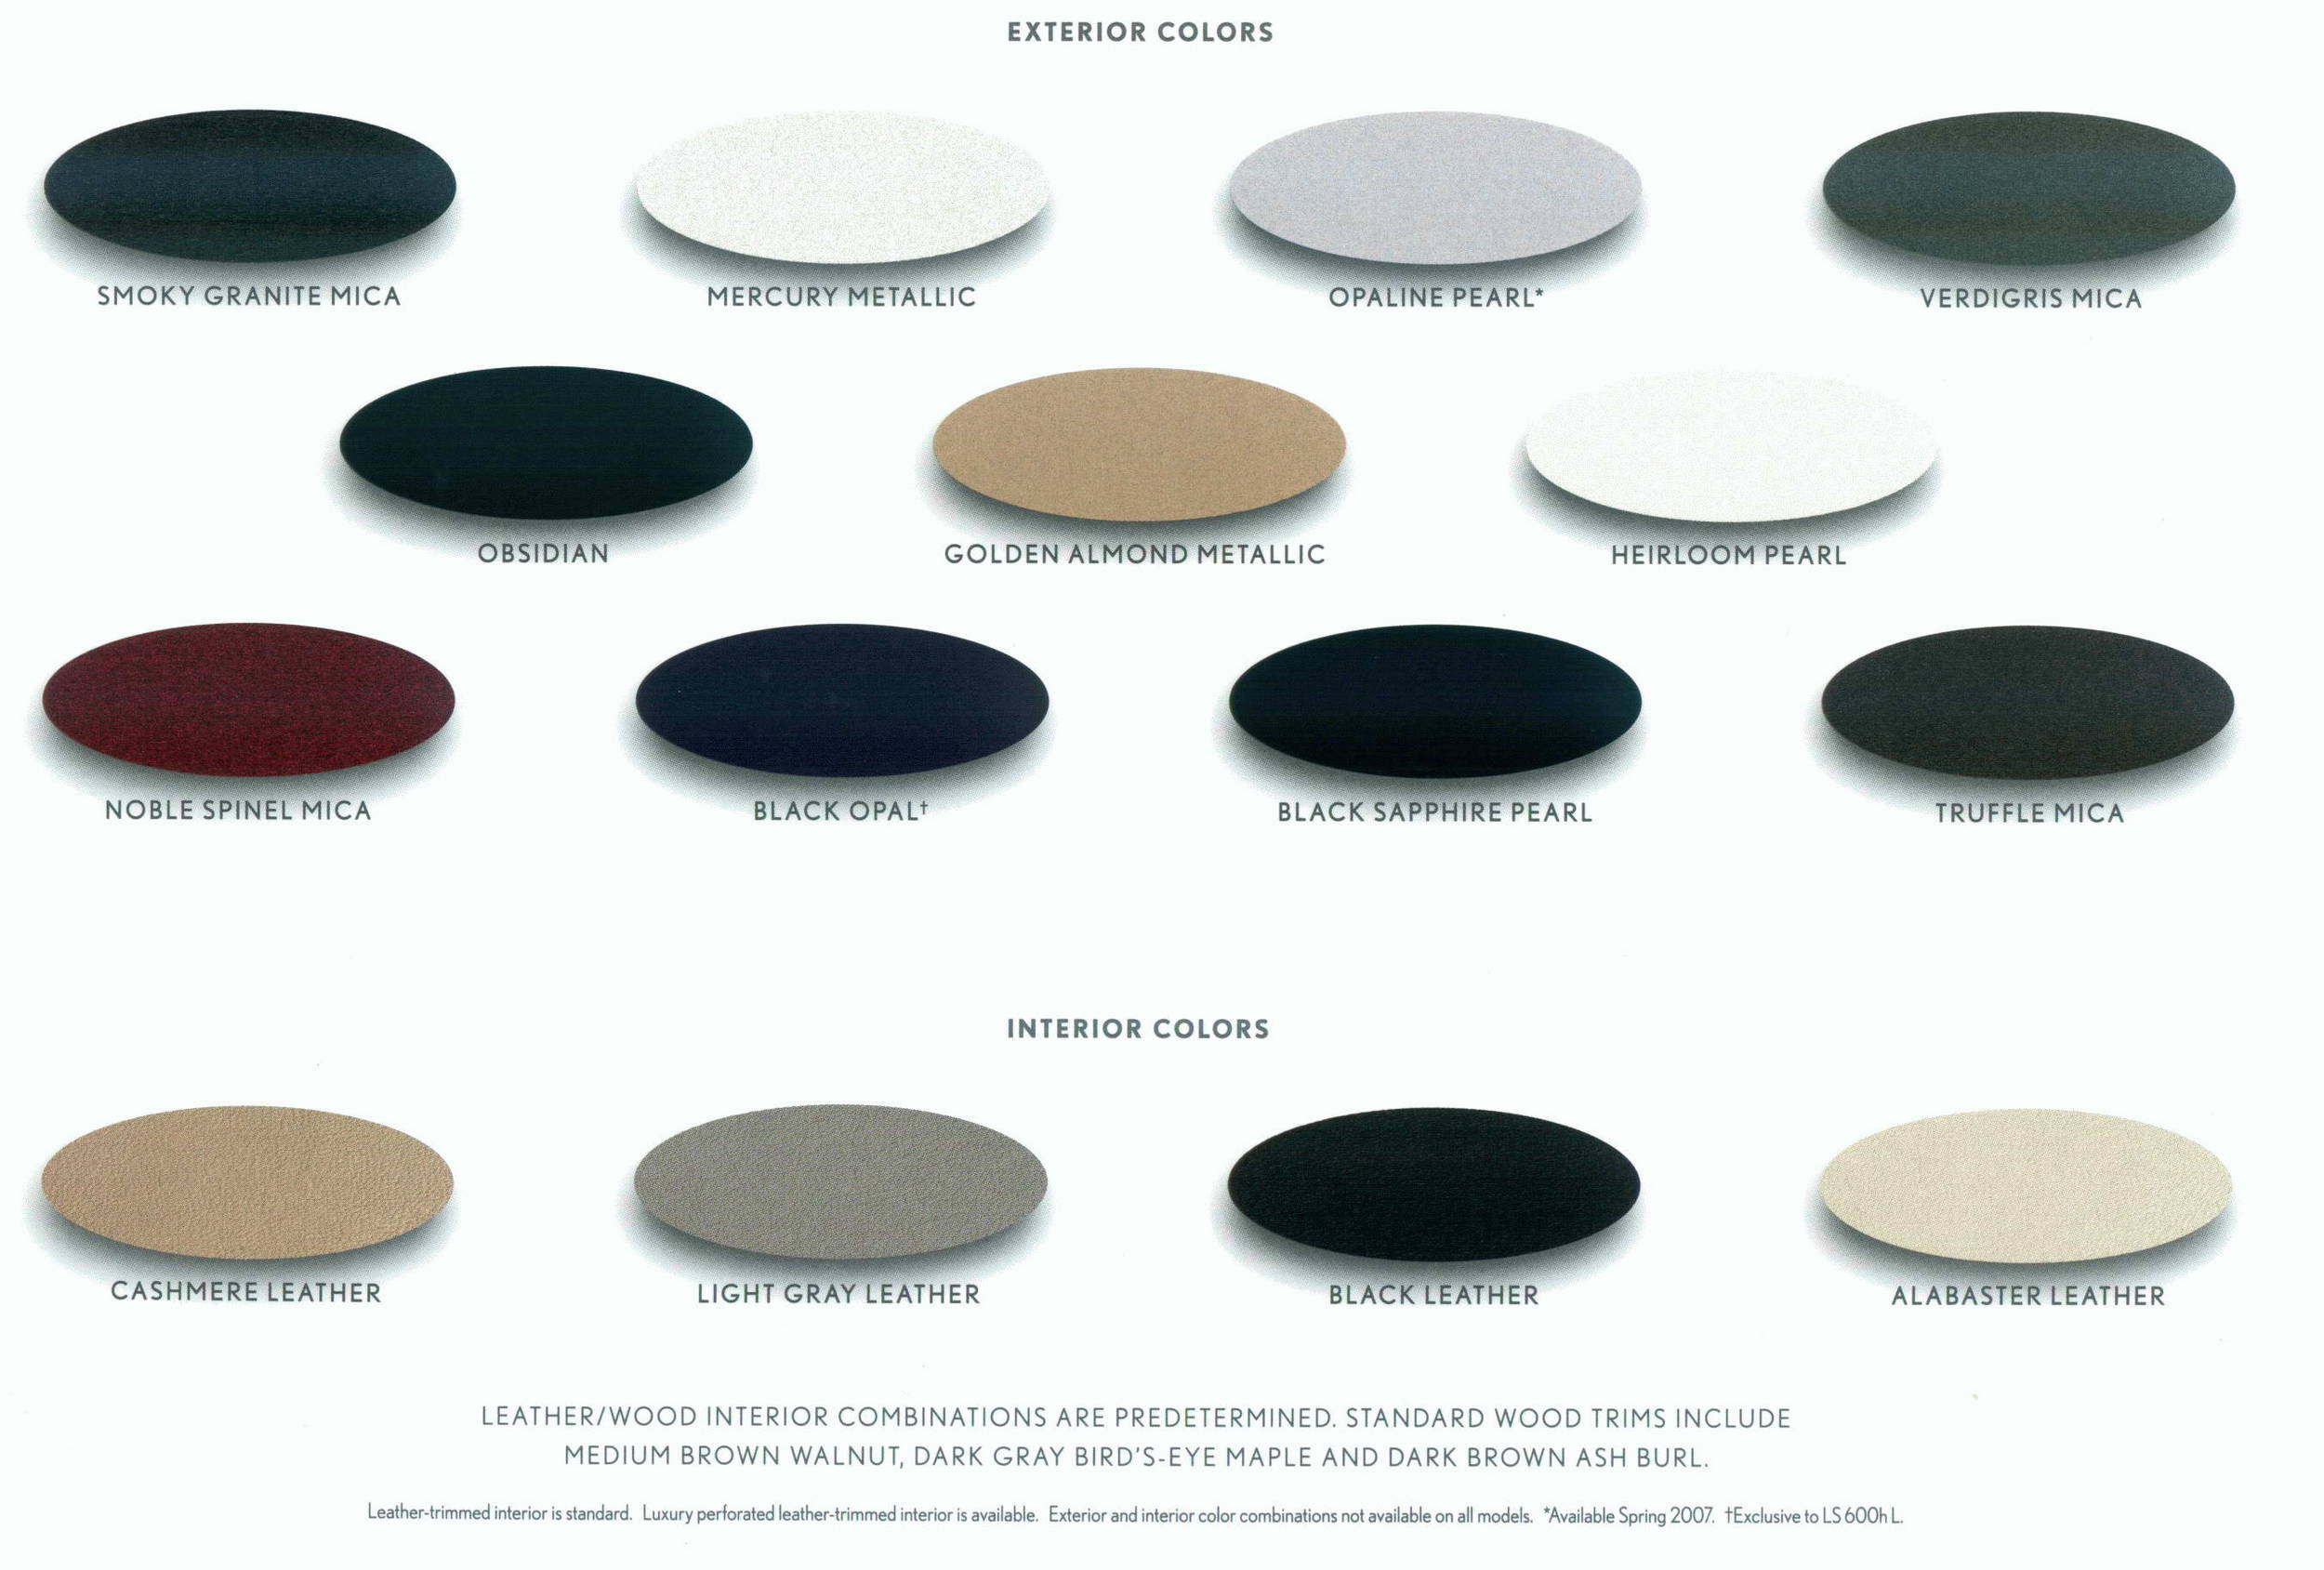 2010 Lexus Color Chart